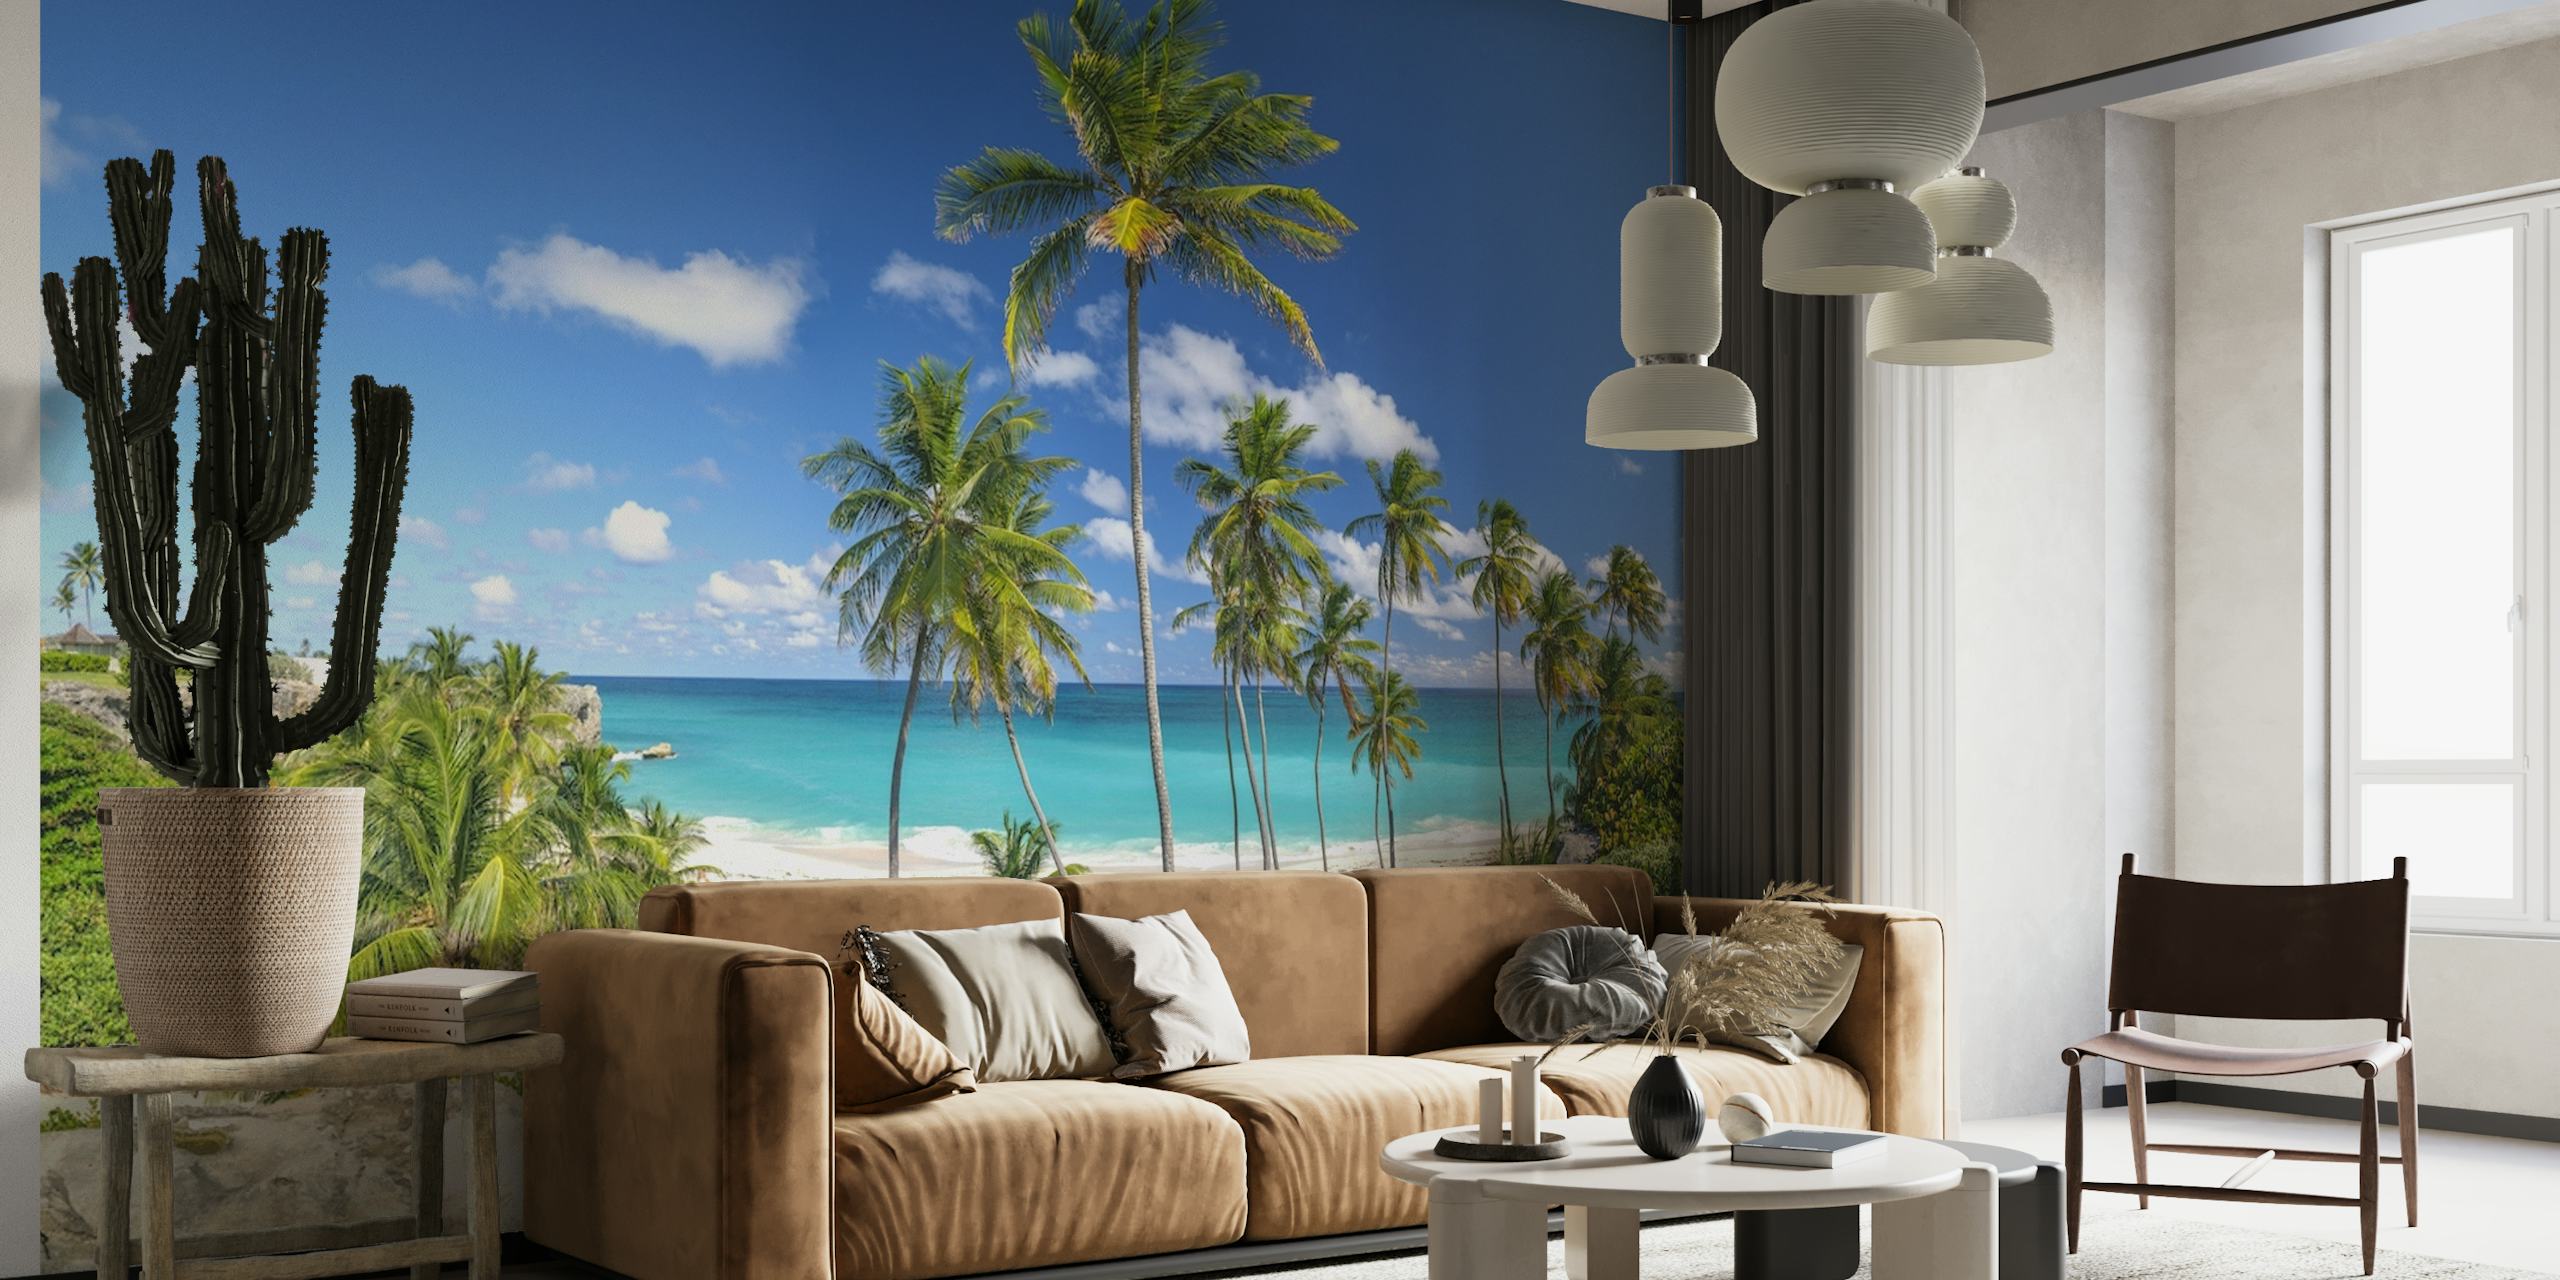 fotomural vinílico de praia tropical com palmeiras e mar azul claro